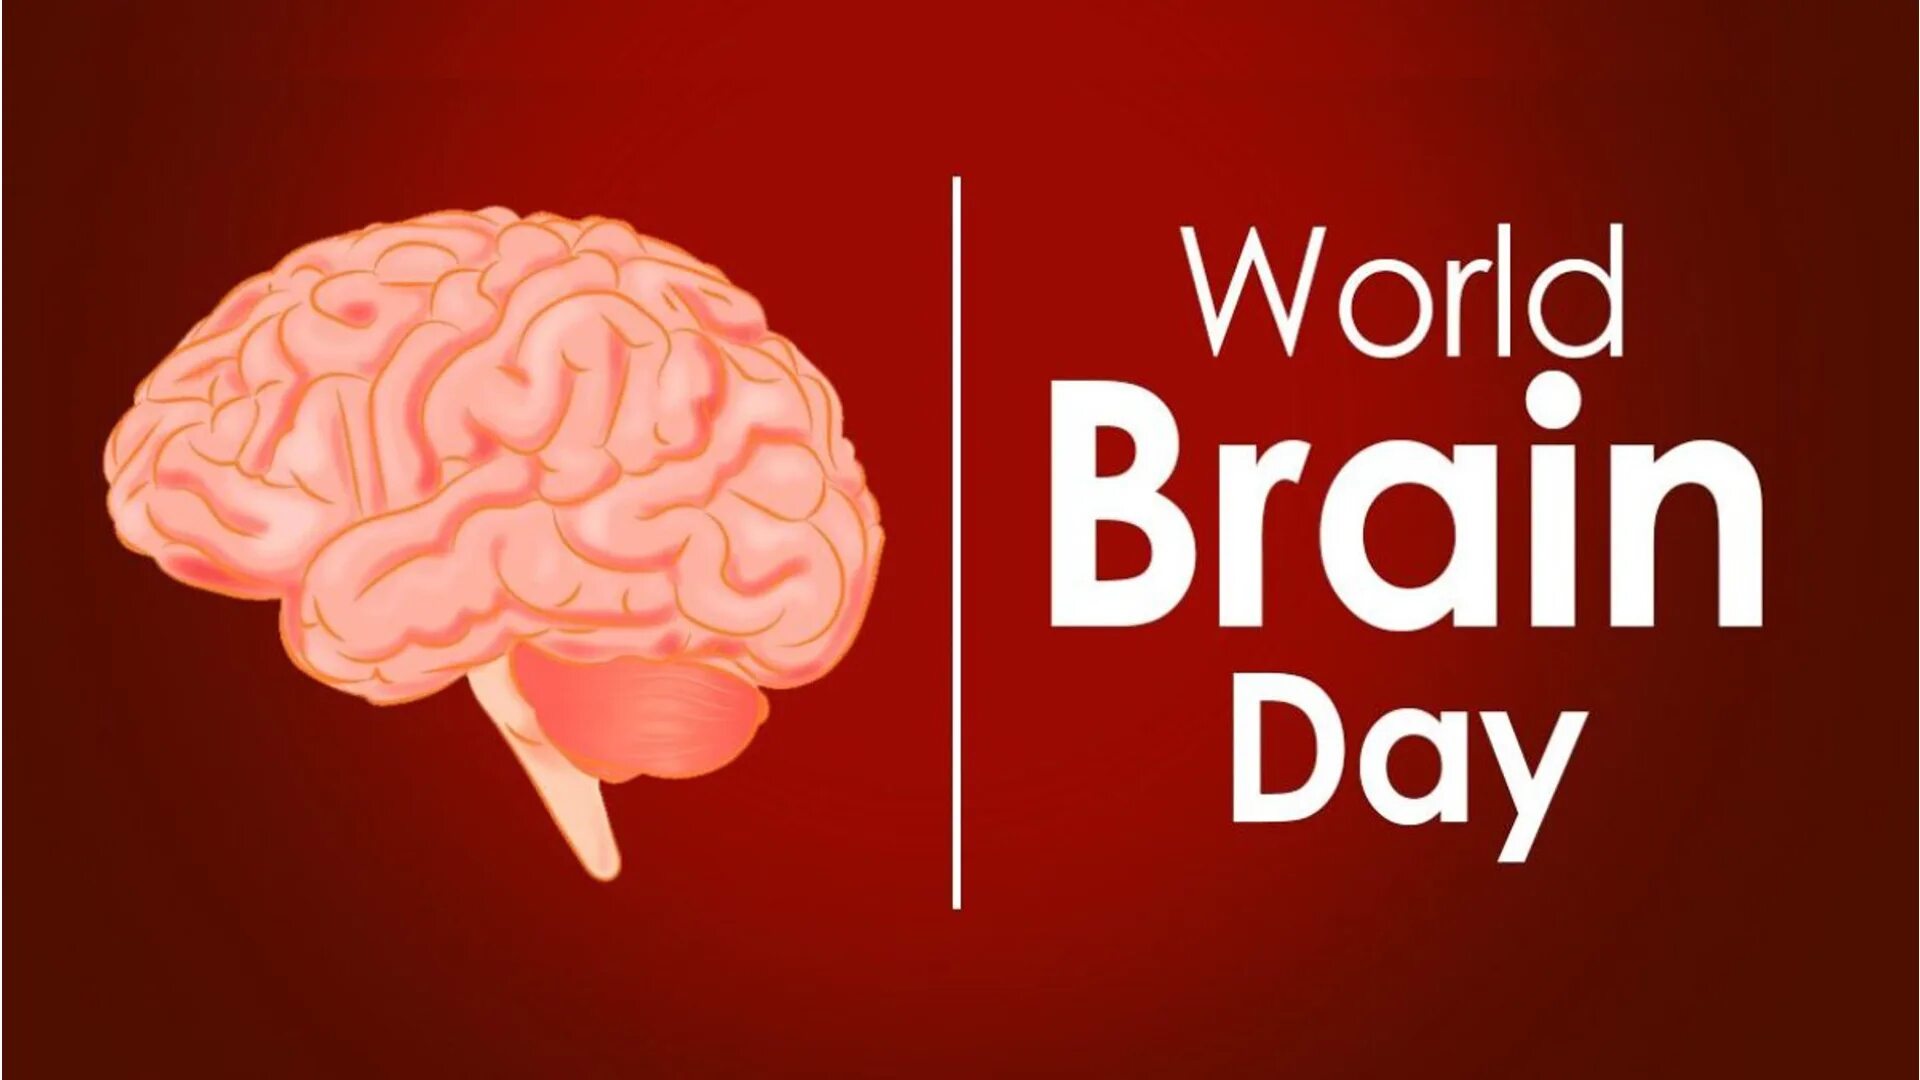 Brains day. Мировой мозг. Всемирный день мозга. 22 Июля Всемирный день мозга. День мозга 22.